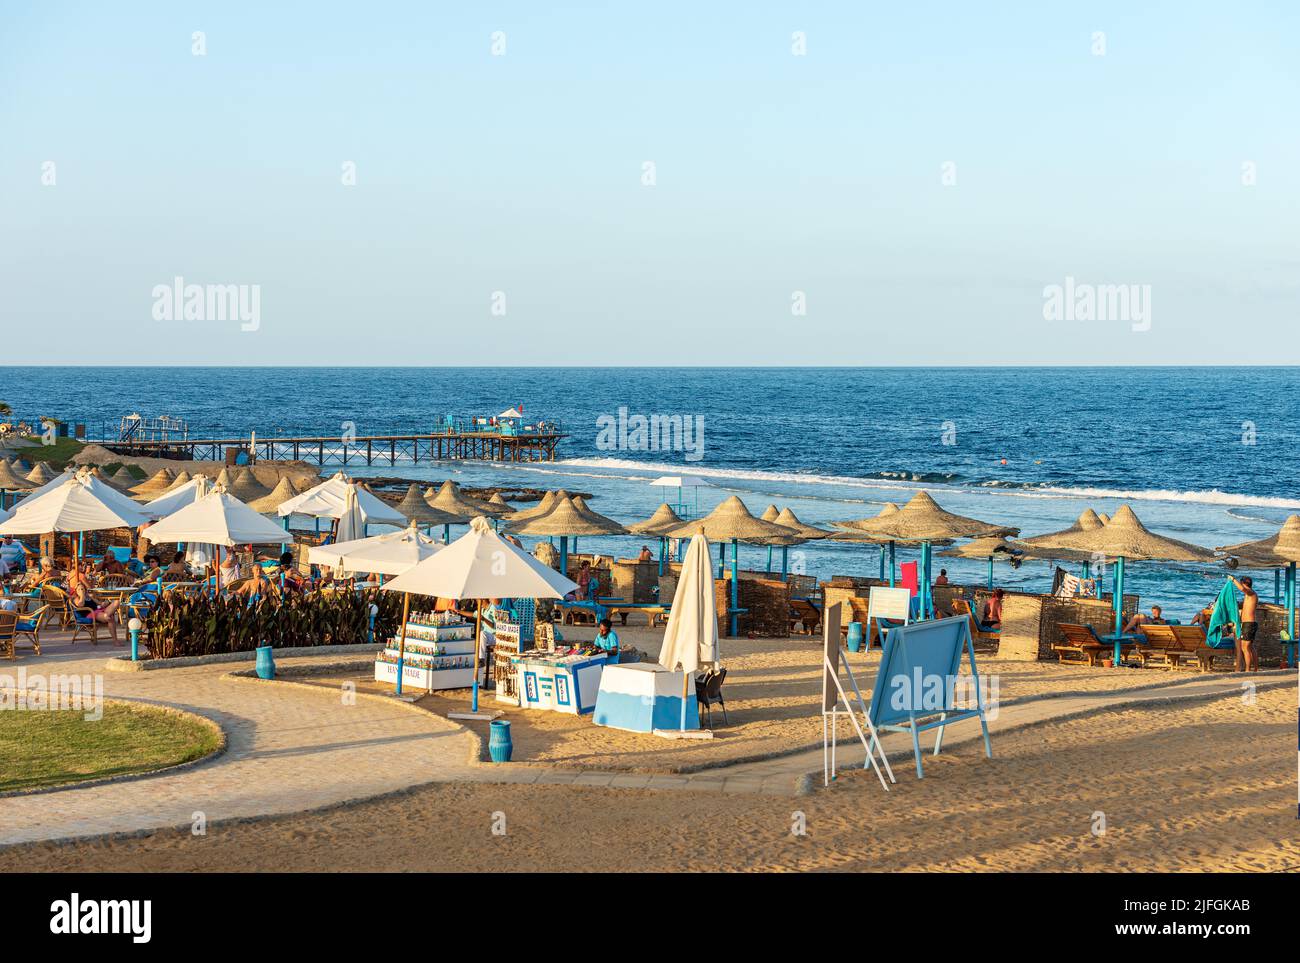 Rotes Meer in der Nähe von Marsa Alam, Sandstrand mit Strohschirmen, Liegestühlen und vielen Touristen, Pier über dem Riff zum Tauchen, Schnorcheln und Schwimmen. Stockfoto